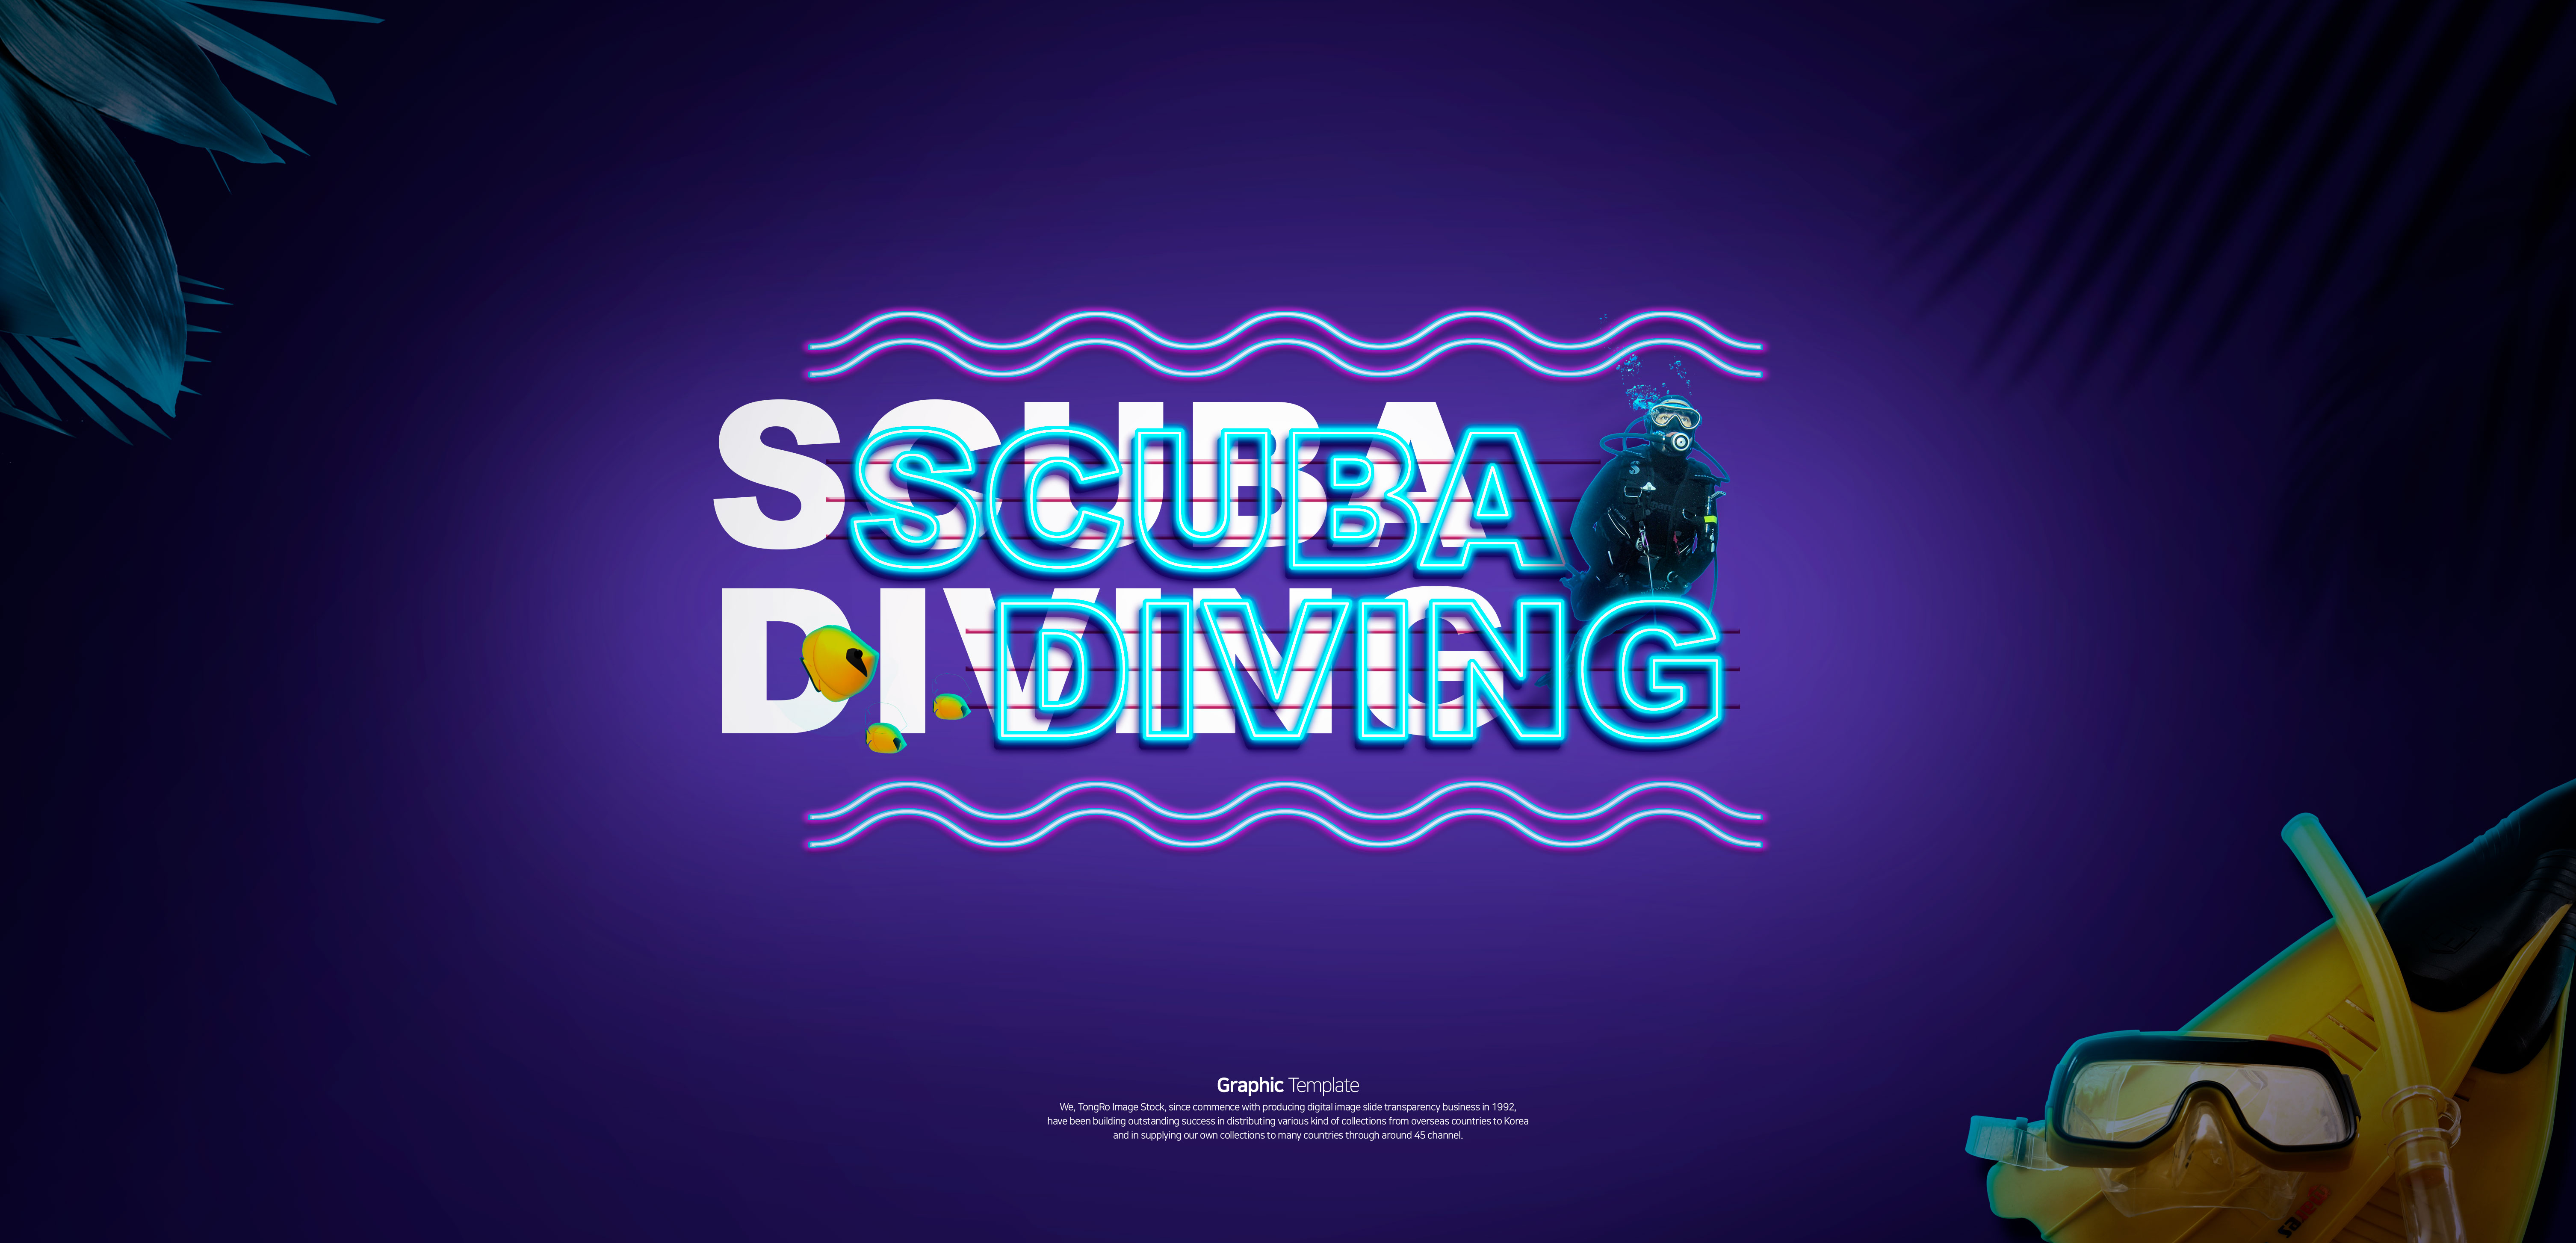 潜水护目镜装备电商网站广告Banner设计插图